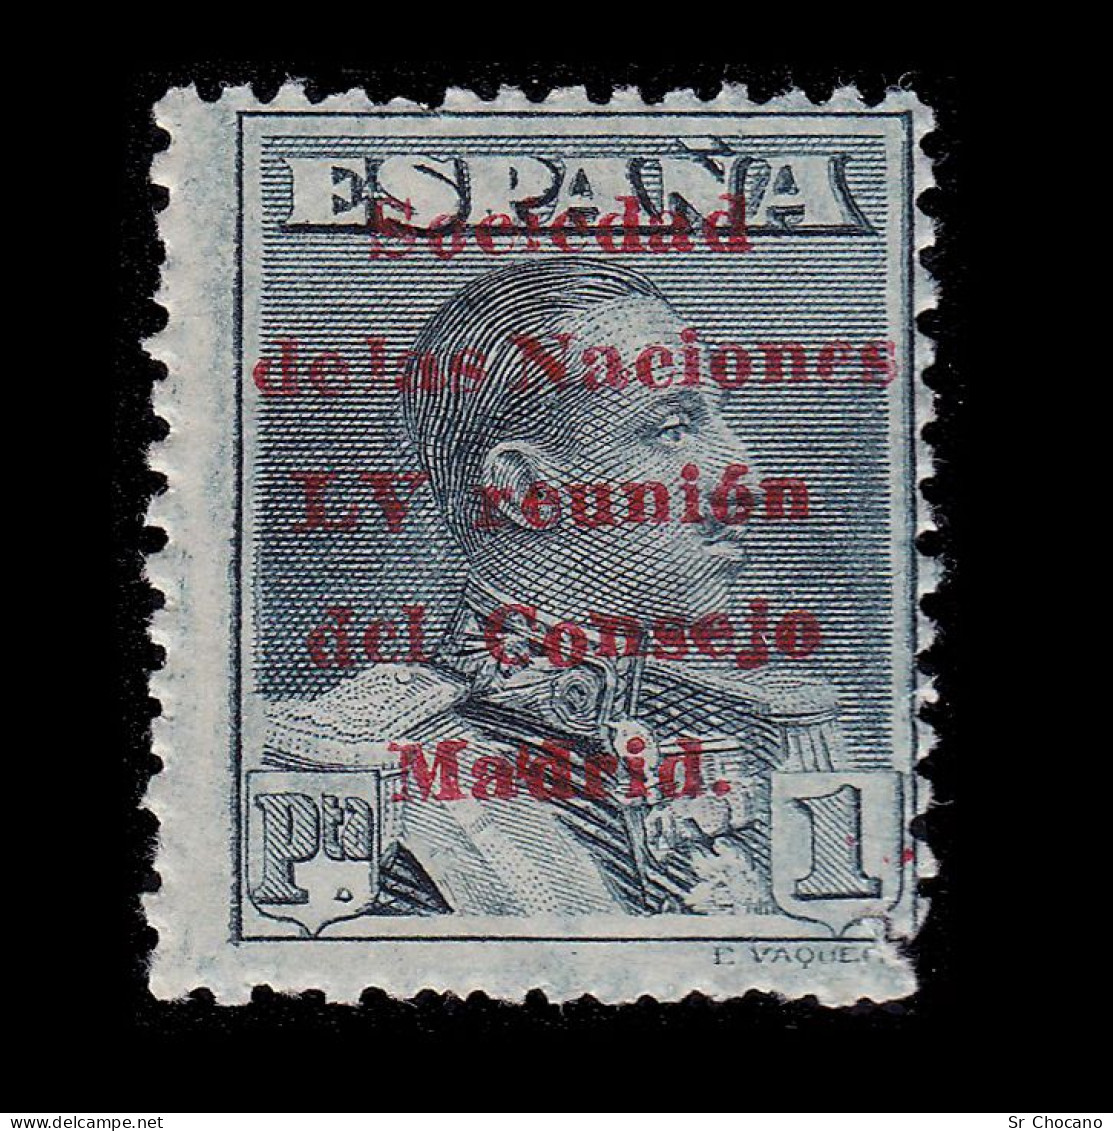 Alfonso XIII.1929.Sociedad Naciones.1p.MNH.Edifil 465 - Nuevos